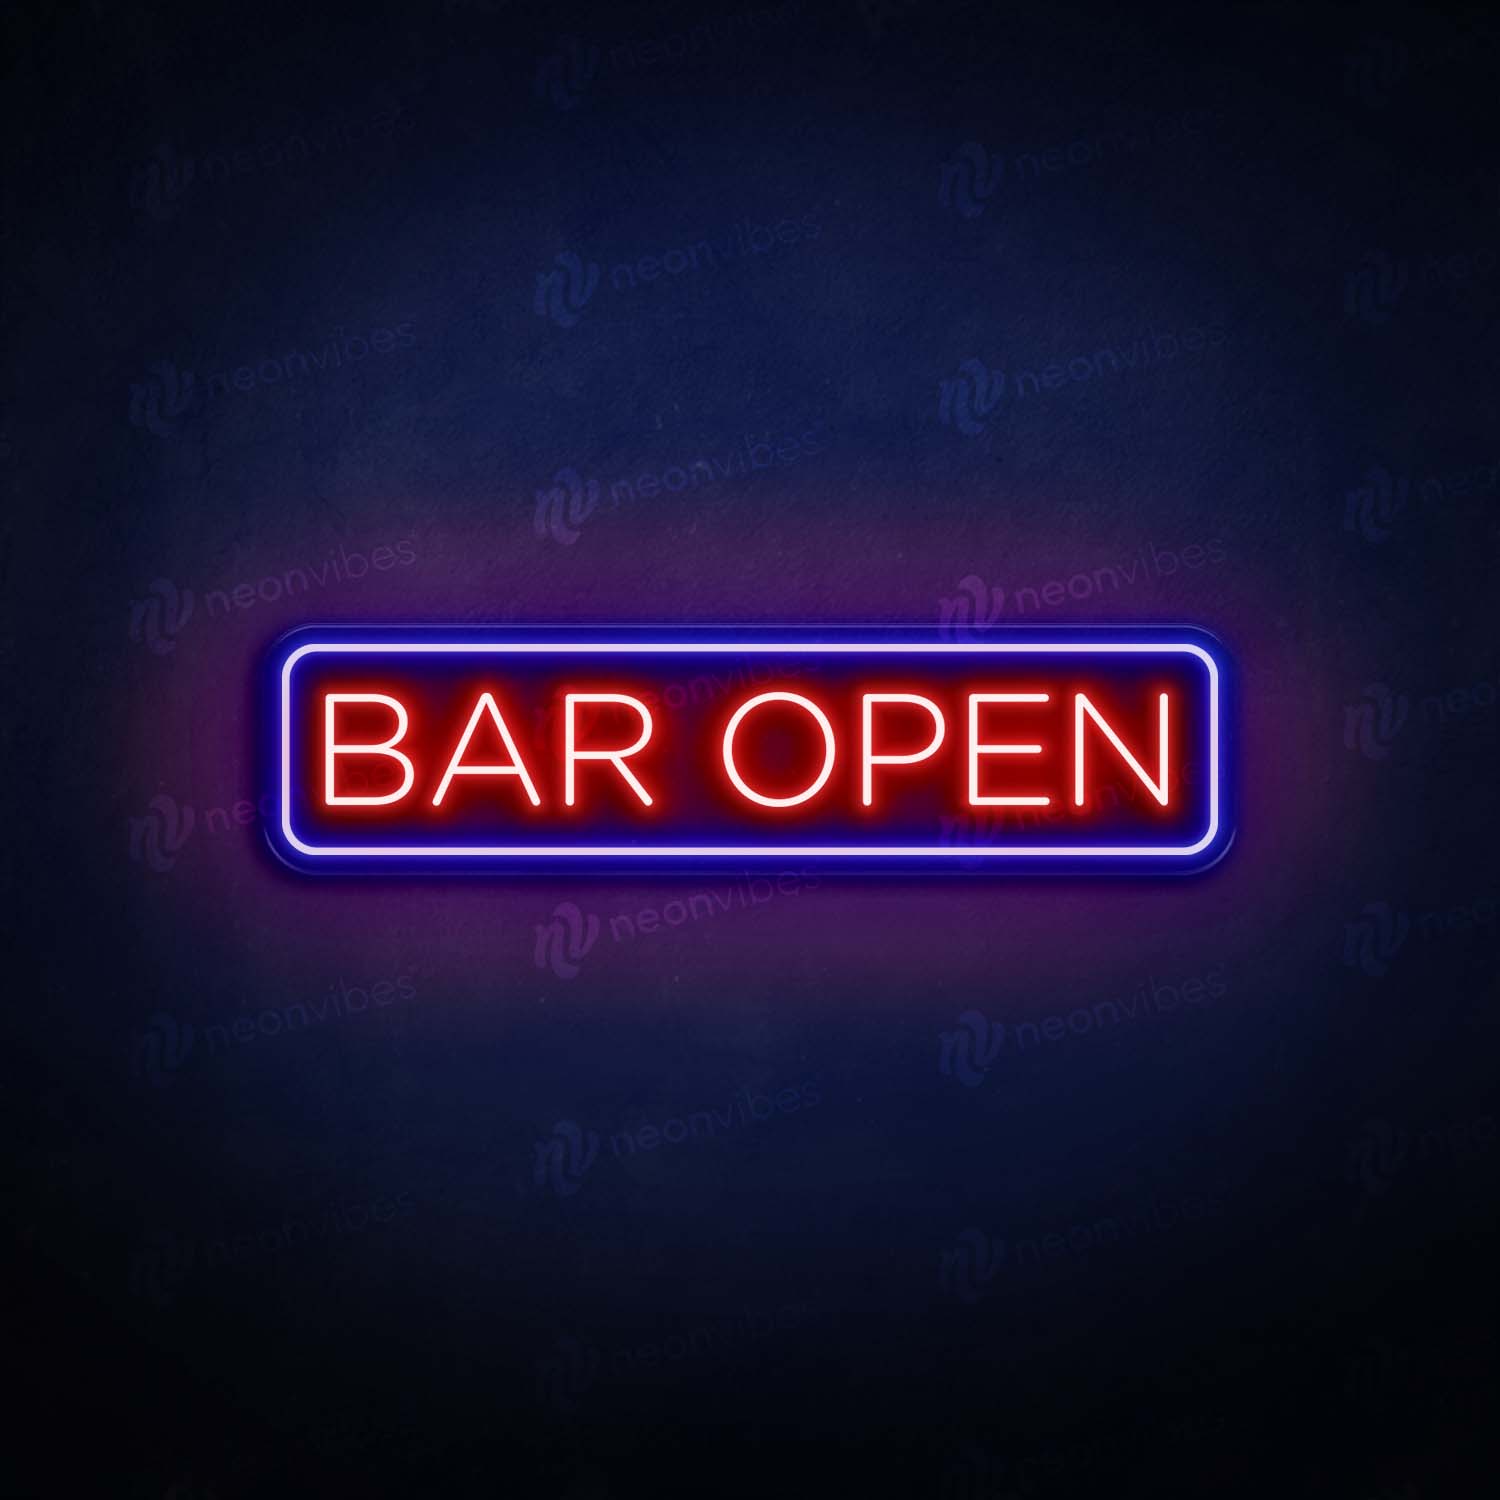 Bar Open V2 neon sign